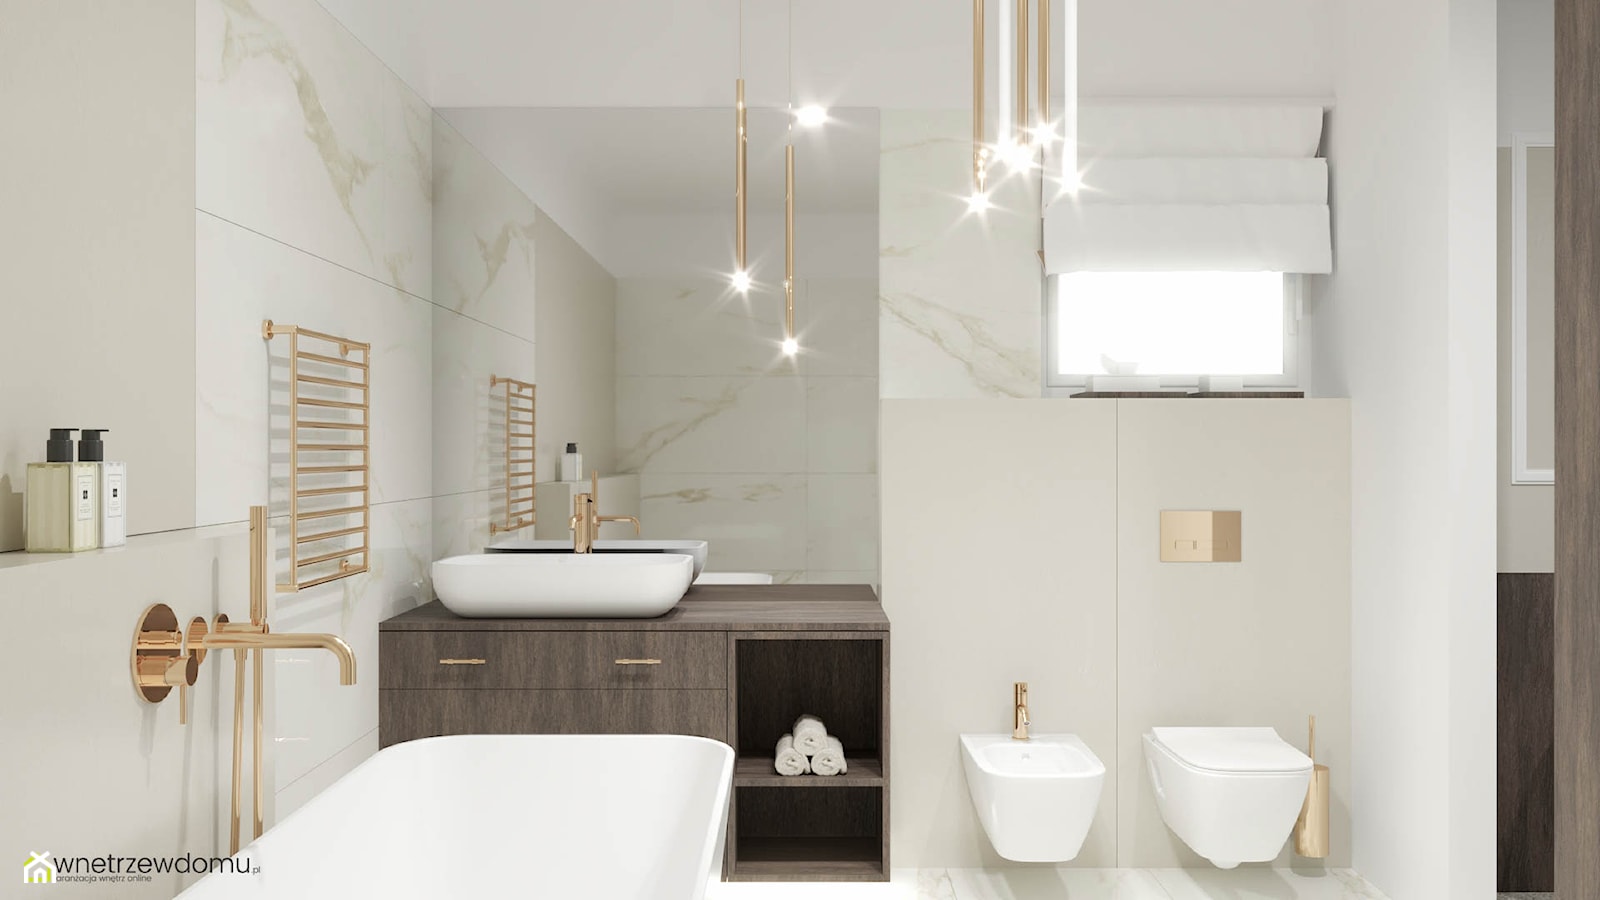 Łazienka glamour - złoto i biały marmur - zdjęcie od wnetrzewdomu - Homebook